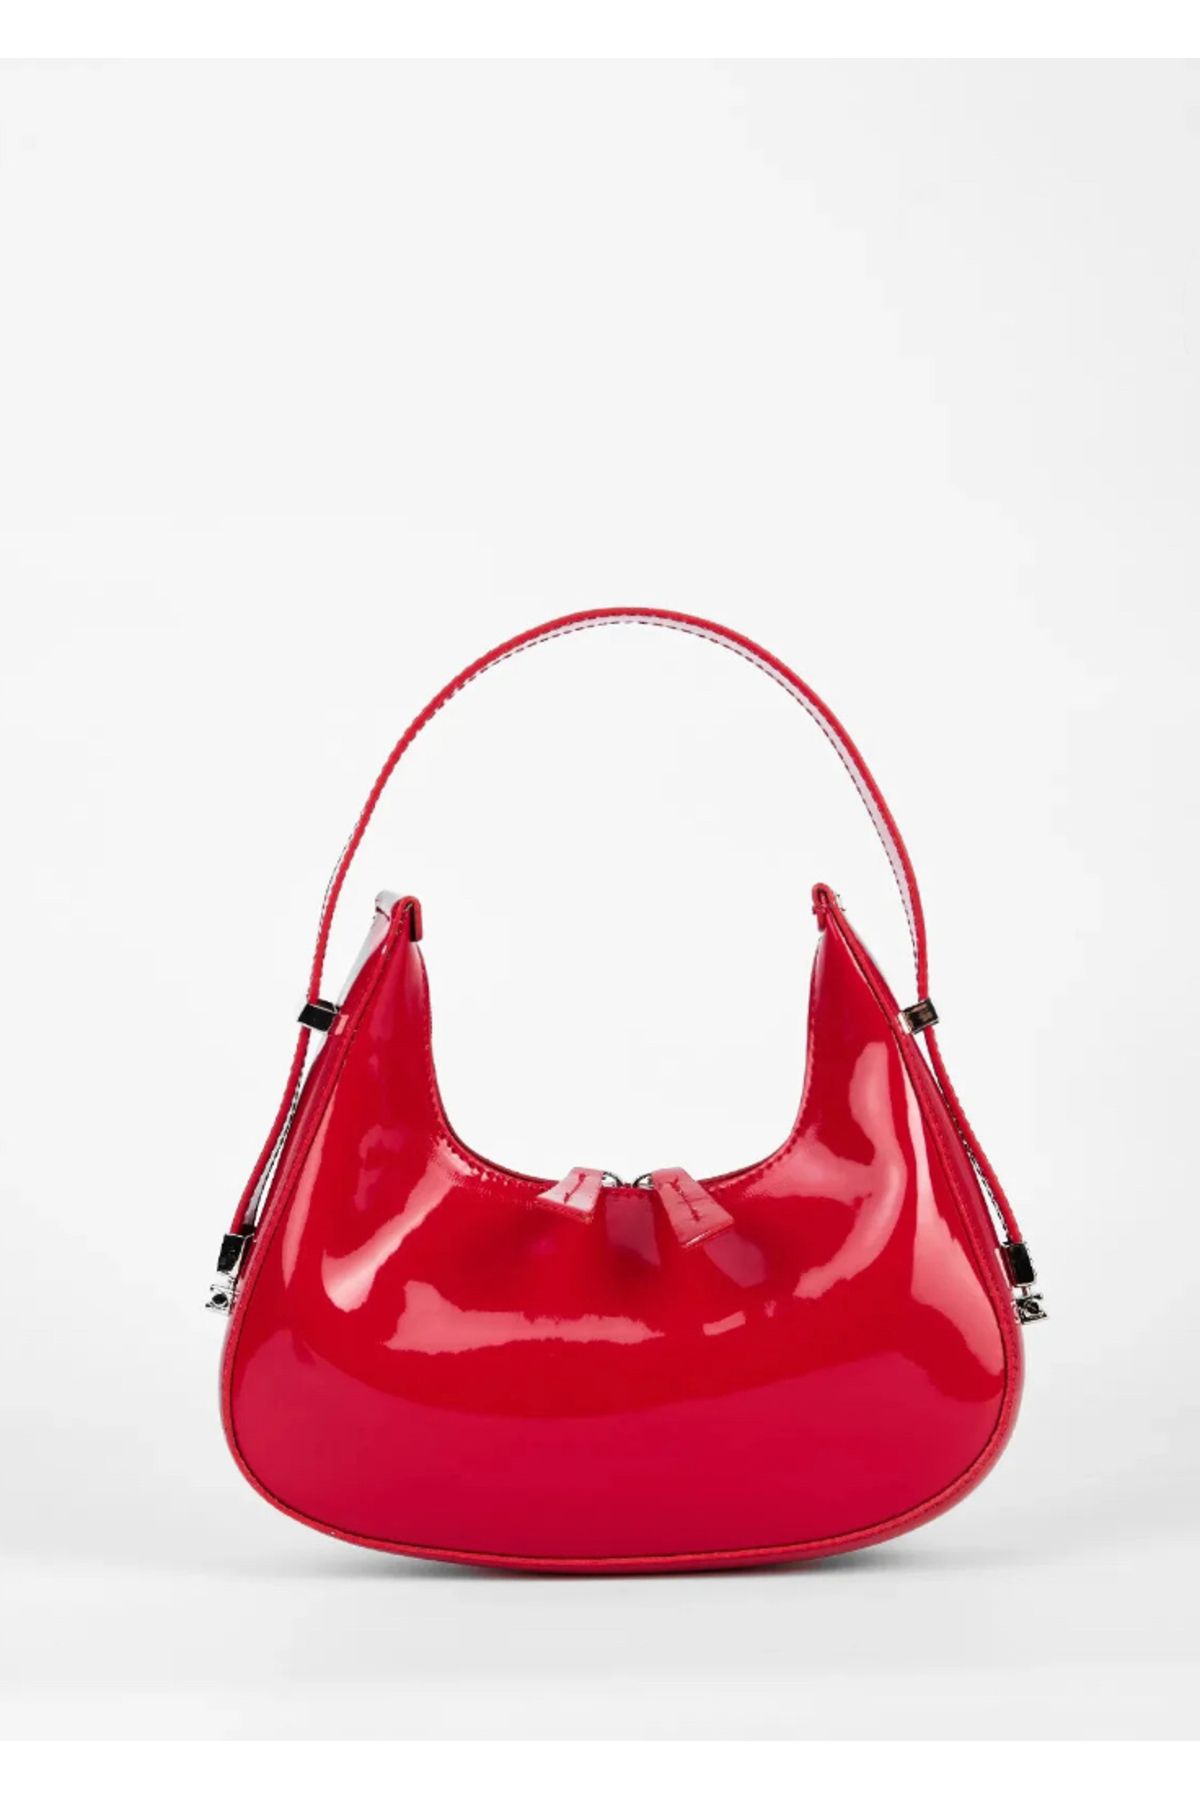 edaçanta Kadın el ve kol çantası , rugan kırmızı çanta